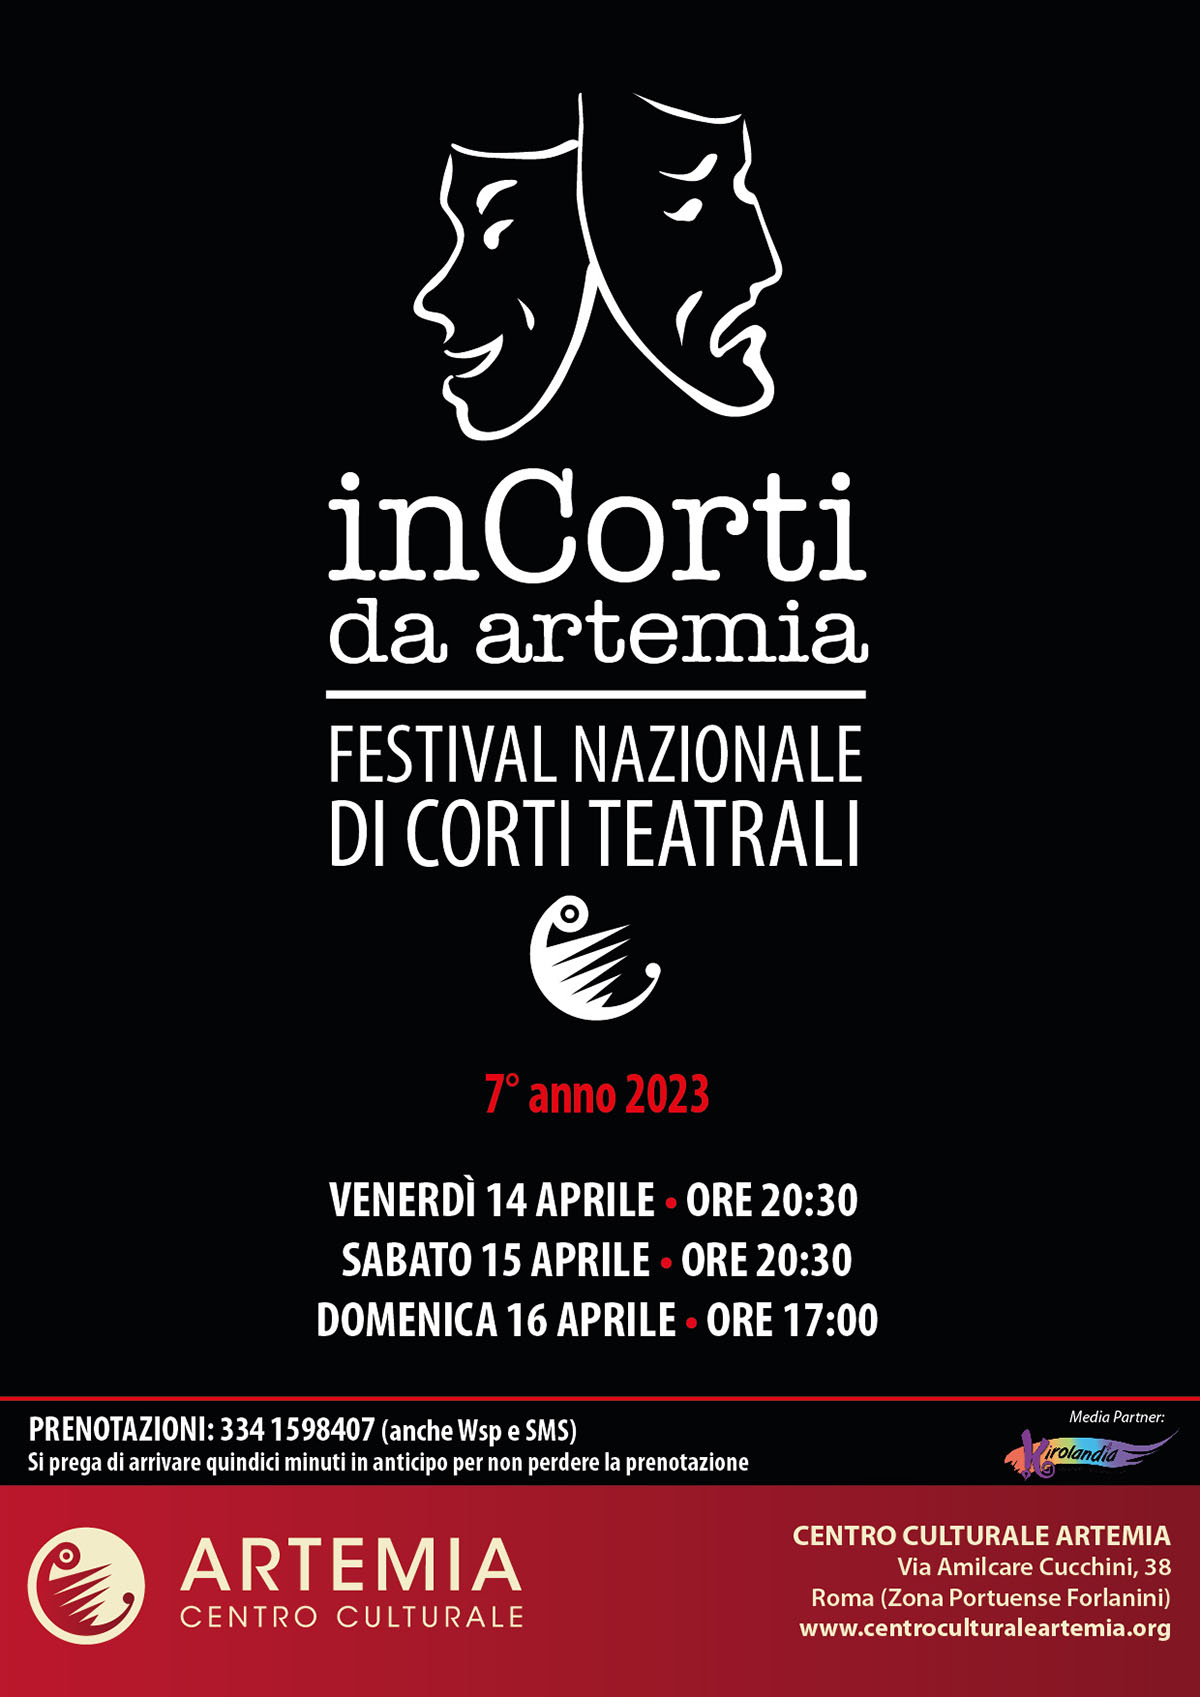 InCorti da Artemia – Festival Nazionale Di Corti Teatrali – 7° anno 2023